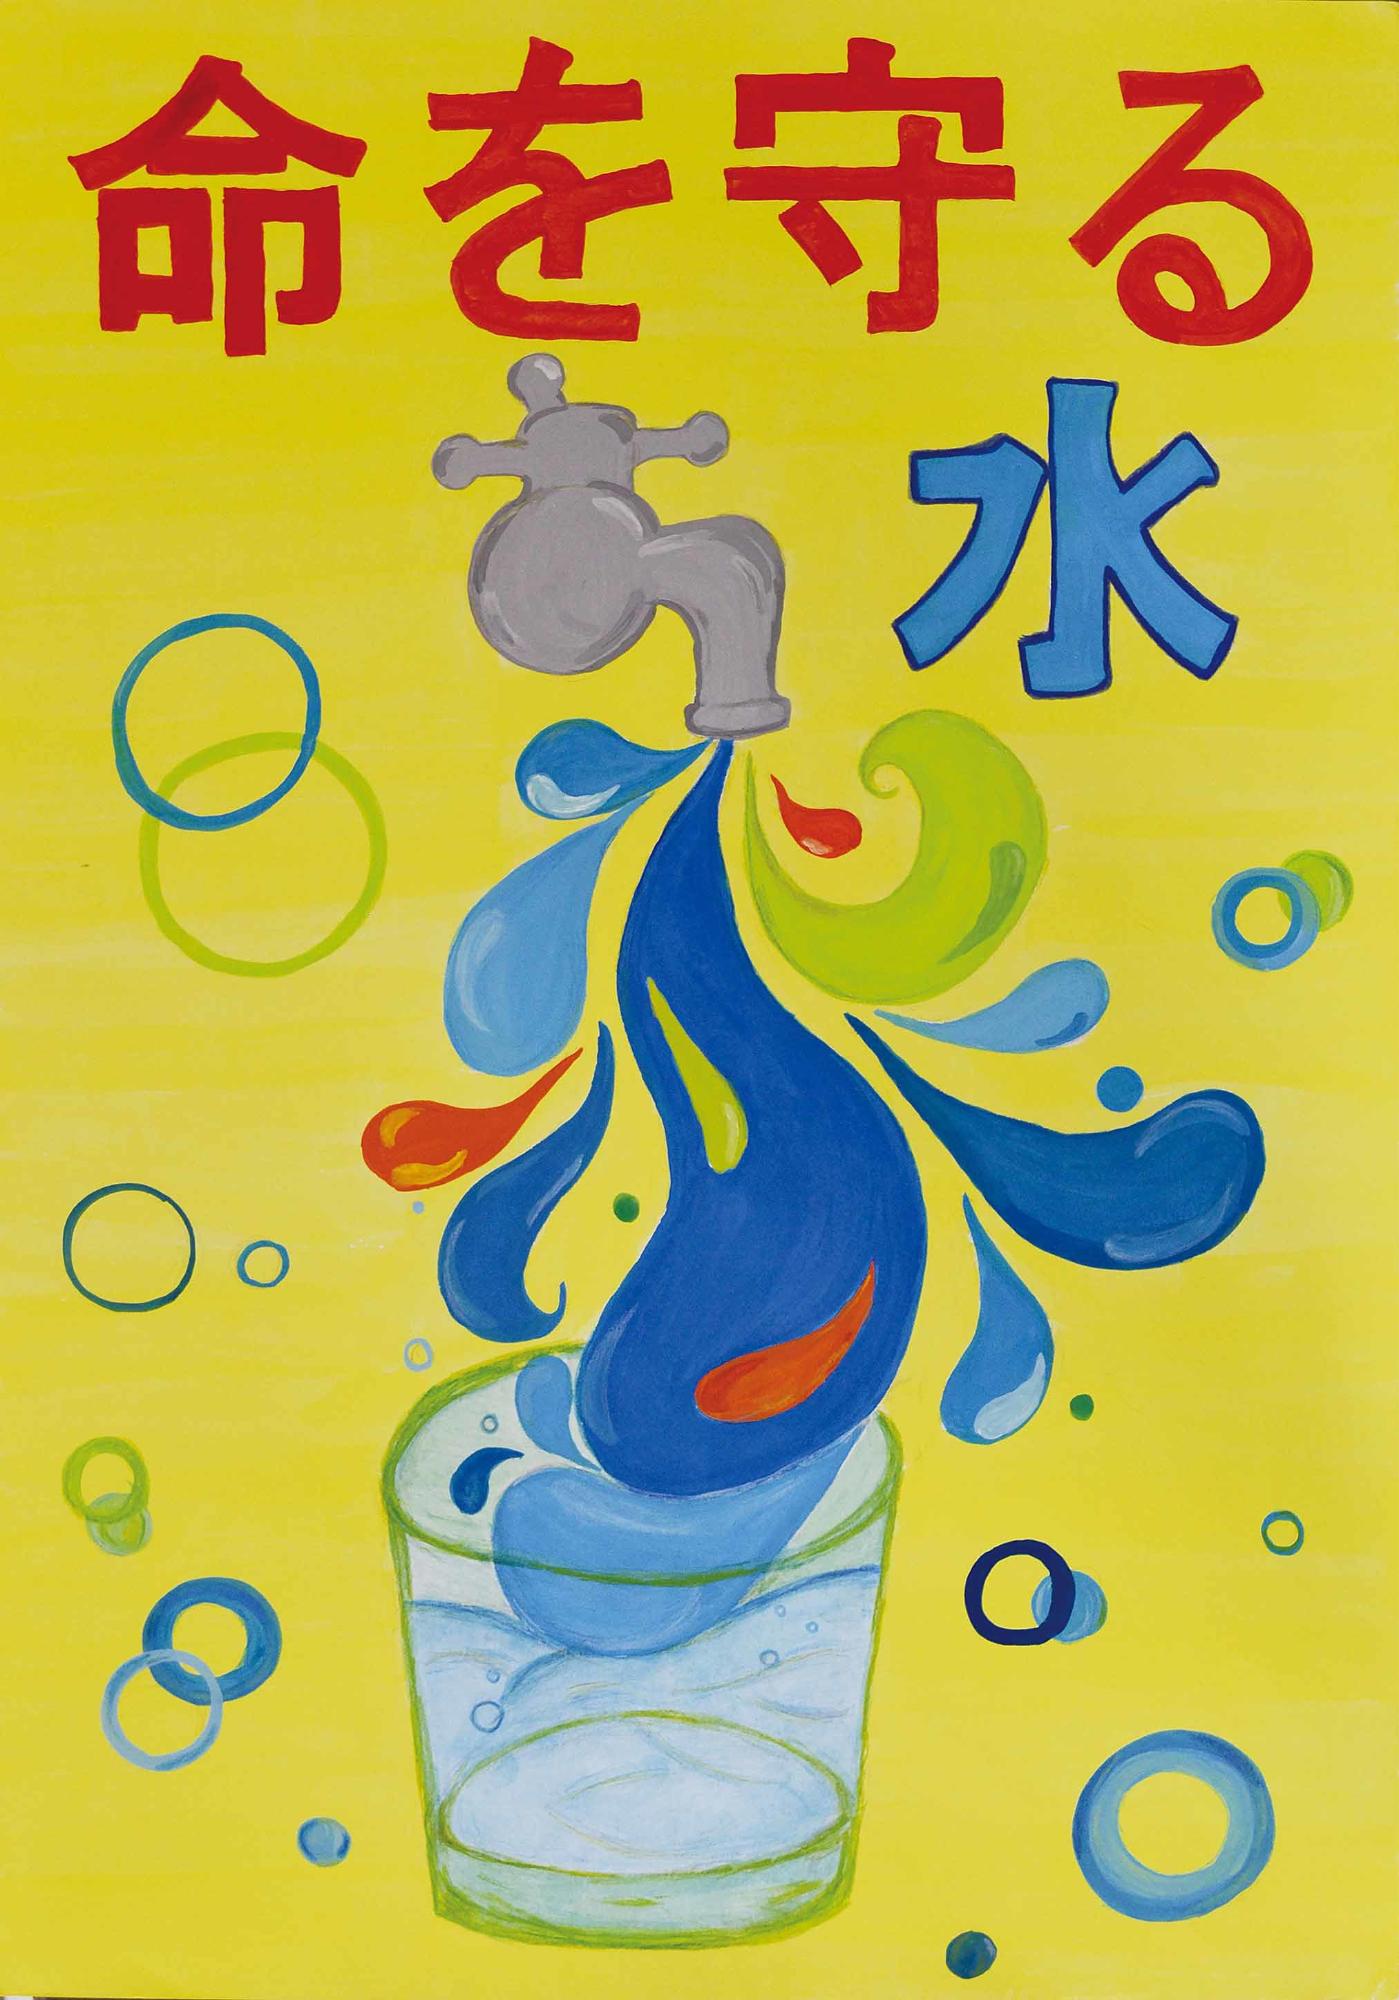 優秀作品 志津中学校 1年 高橋萌々果さん（命を守る水、蛇口からコップに水が注がれ、そのしずくが描かれている）